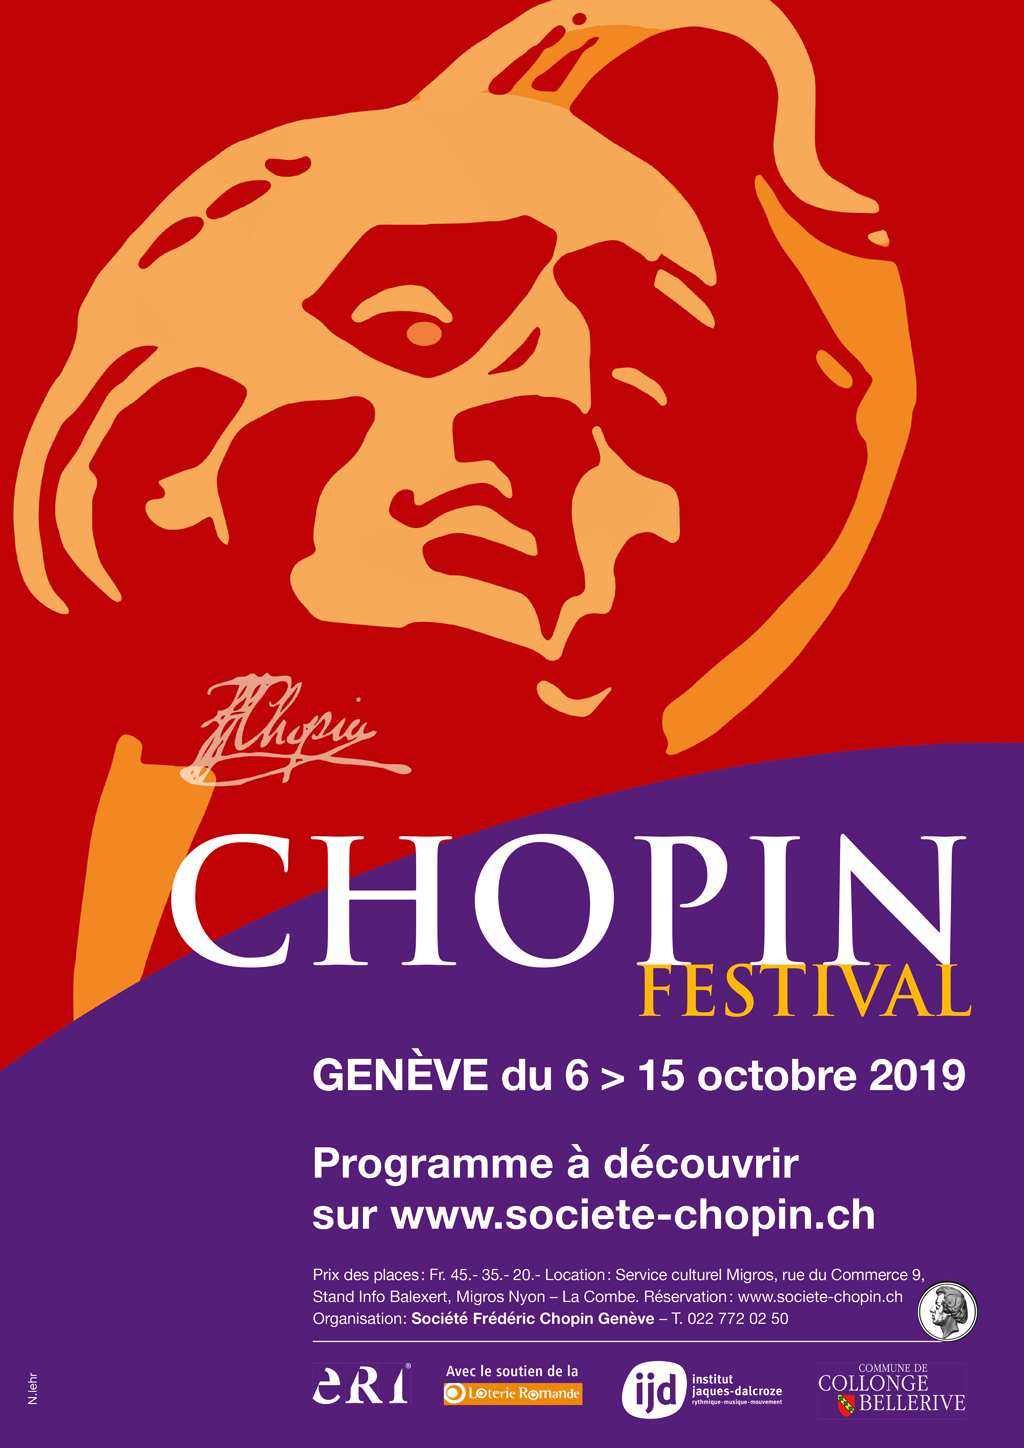 2019 Geneva Chopin Festival